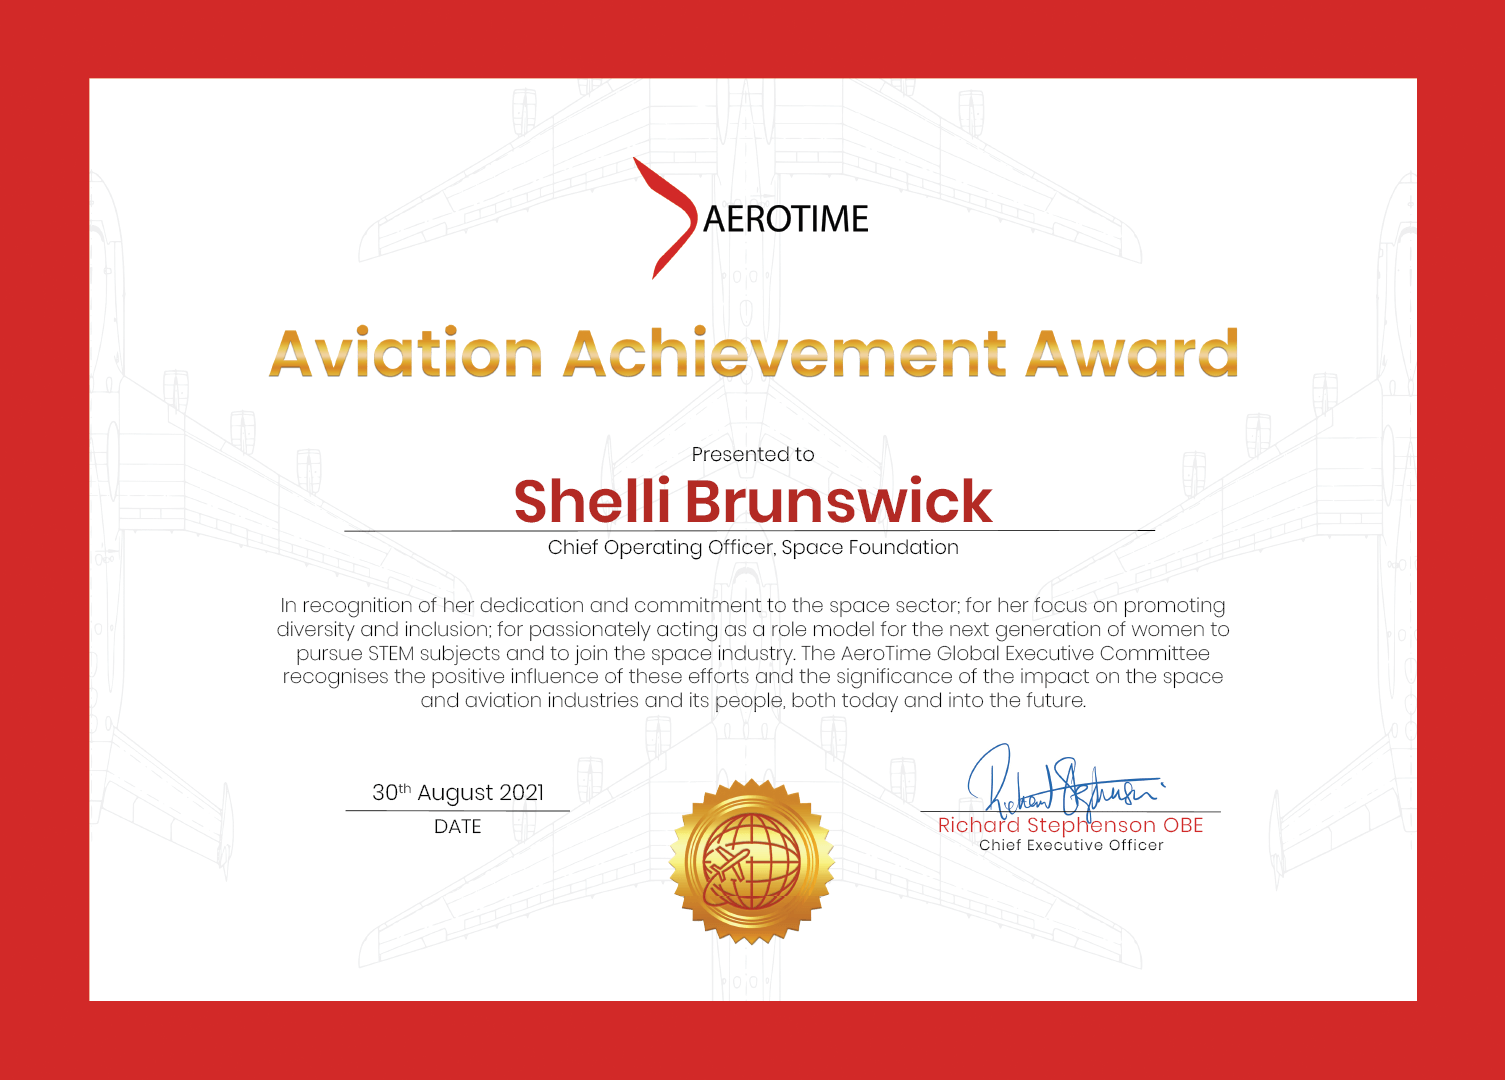 Shelli Brunswick, AeroTime Aviation Achievement Award